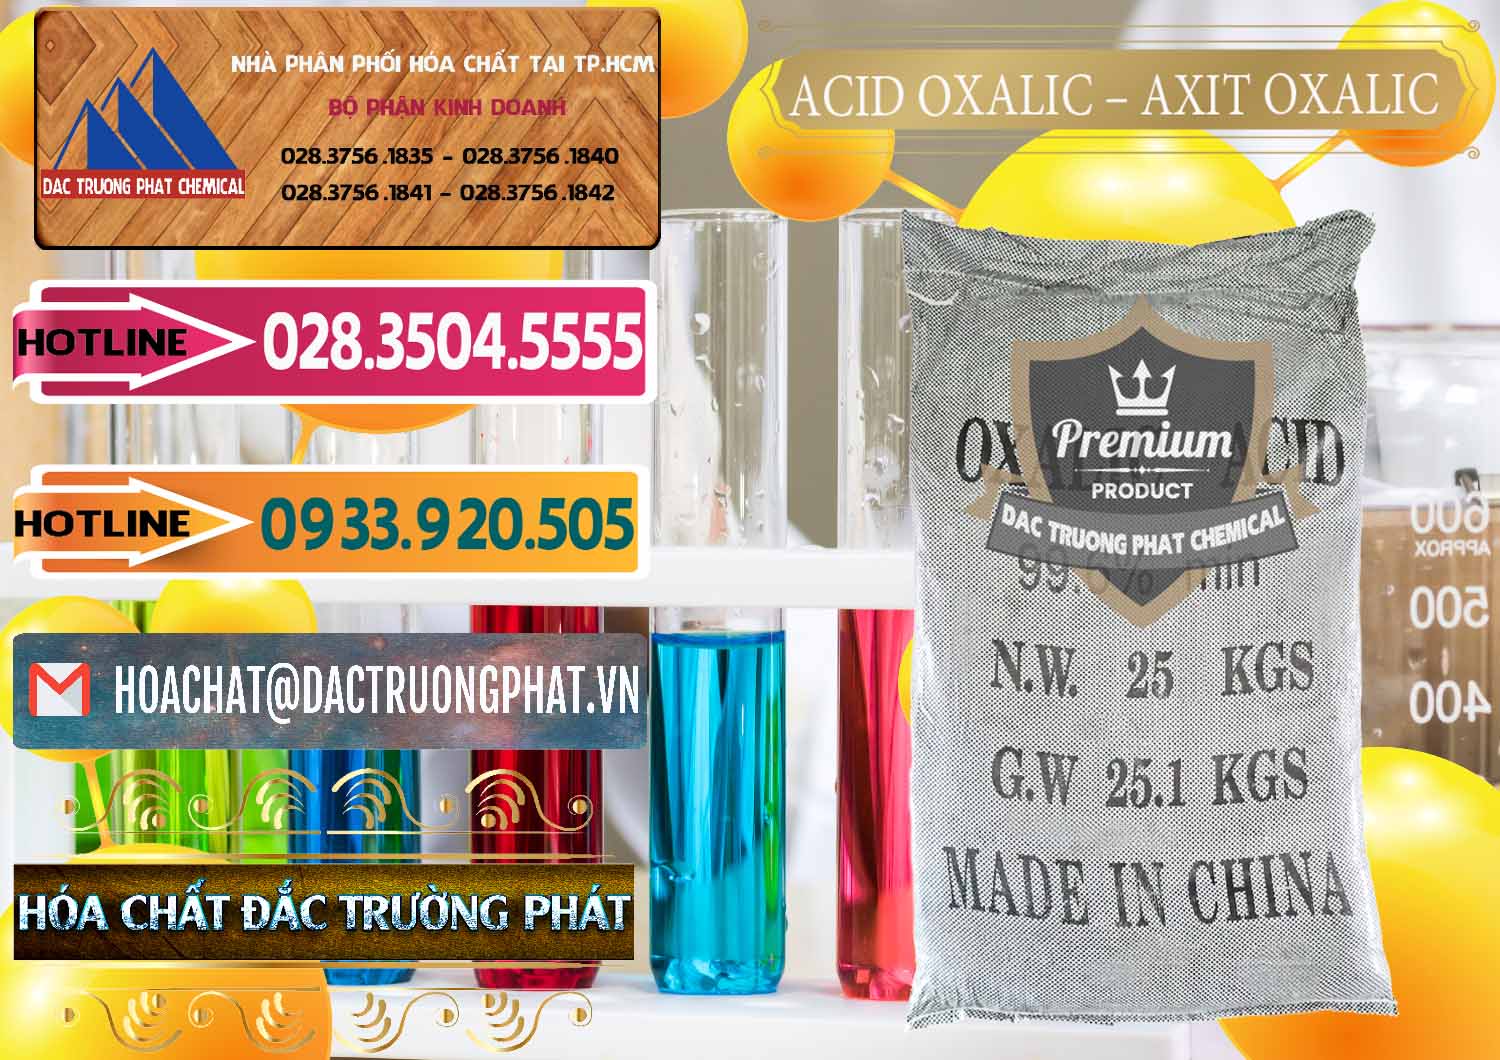 Nơi chuyên bán và cung cấp Acid Oxalic – Axit Oxalic 99.6% Trung Quốc China - 0014 - Cty kinh doanh - cung cấp hóa chất tại TP.HCM - dactruongphat.vn